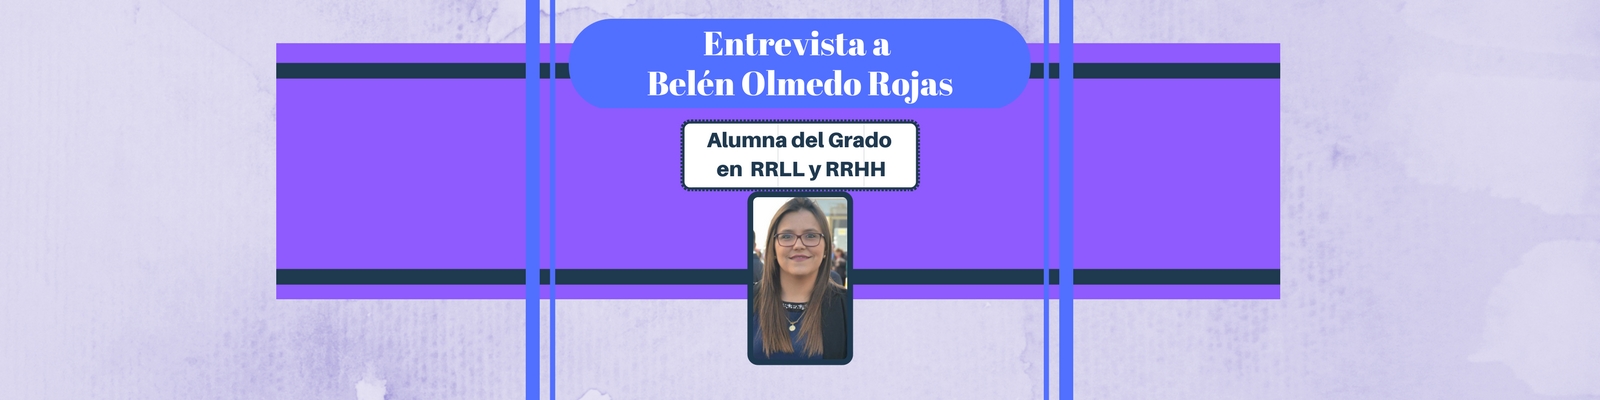 Entrevista a Belén Olmedo Rojas. Alumna del Grado en RRLL y RRHH en la UCA